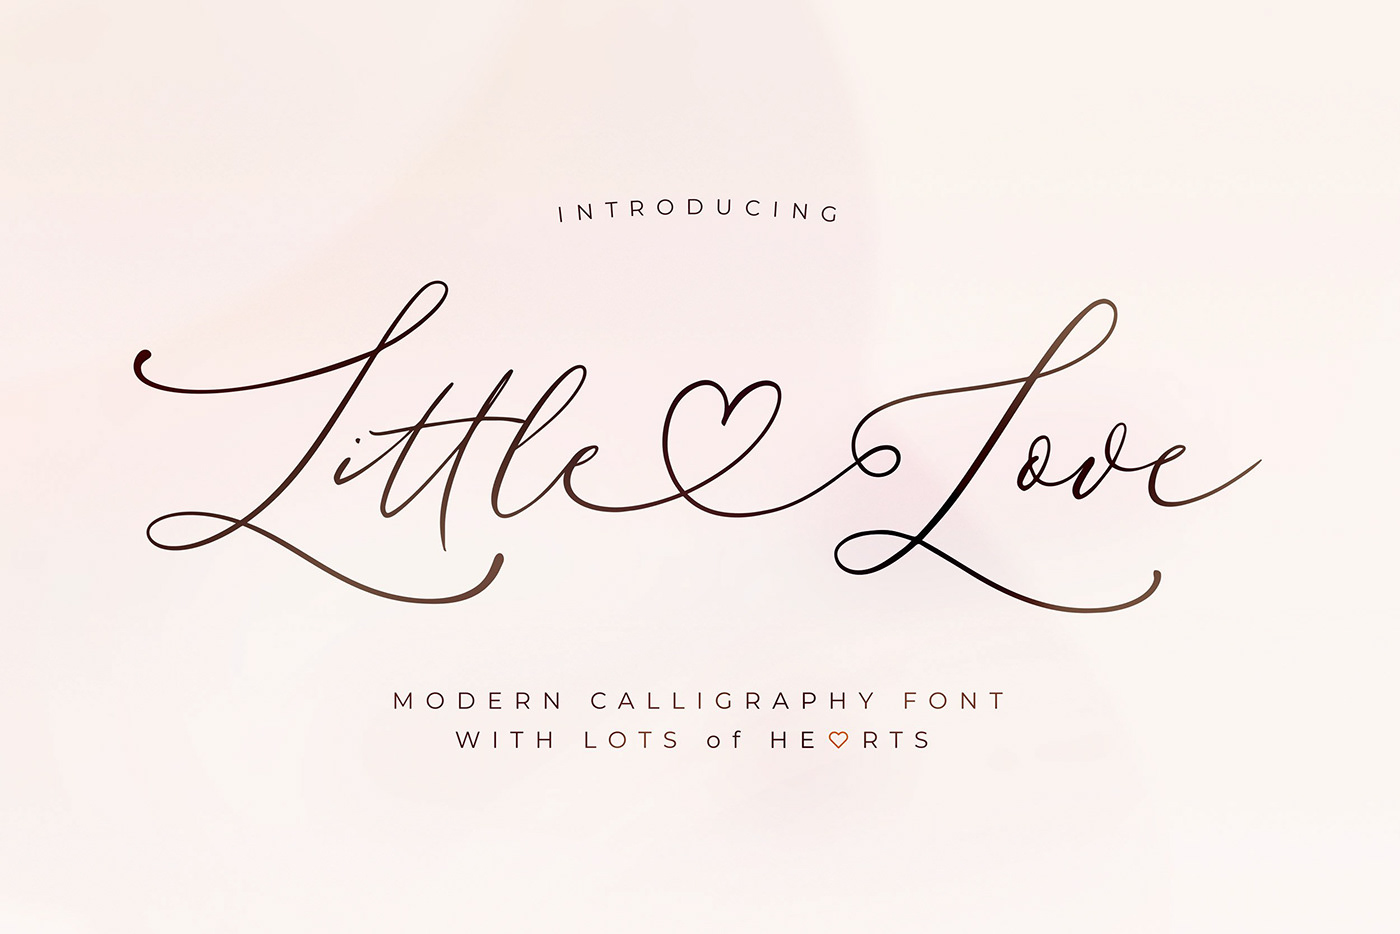 modern calligraphy valentine valentines heart font font luxury font logo font Instagram font LOVELY FONT hand lettered font